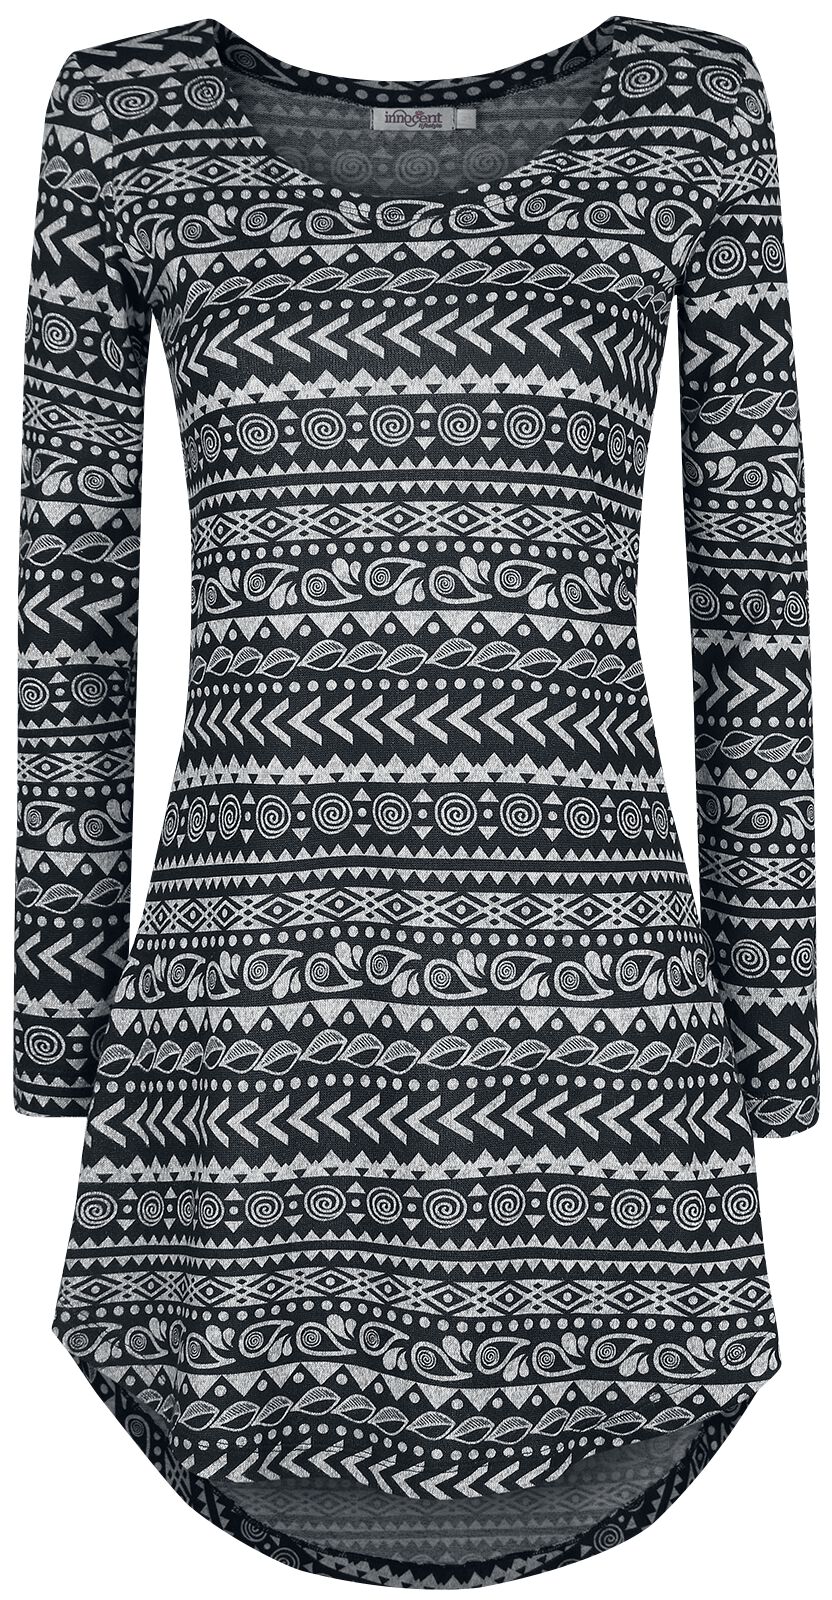 Innocent Kurzes Kleid - Winter Dress - S bis 4XL - für Damen - Größe XXL - grau/schwarz